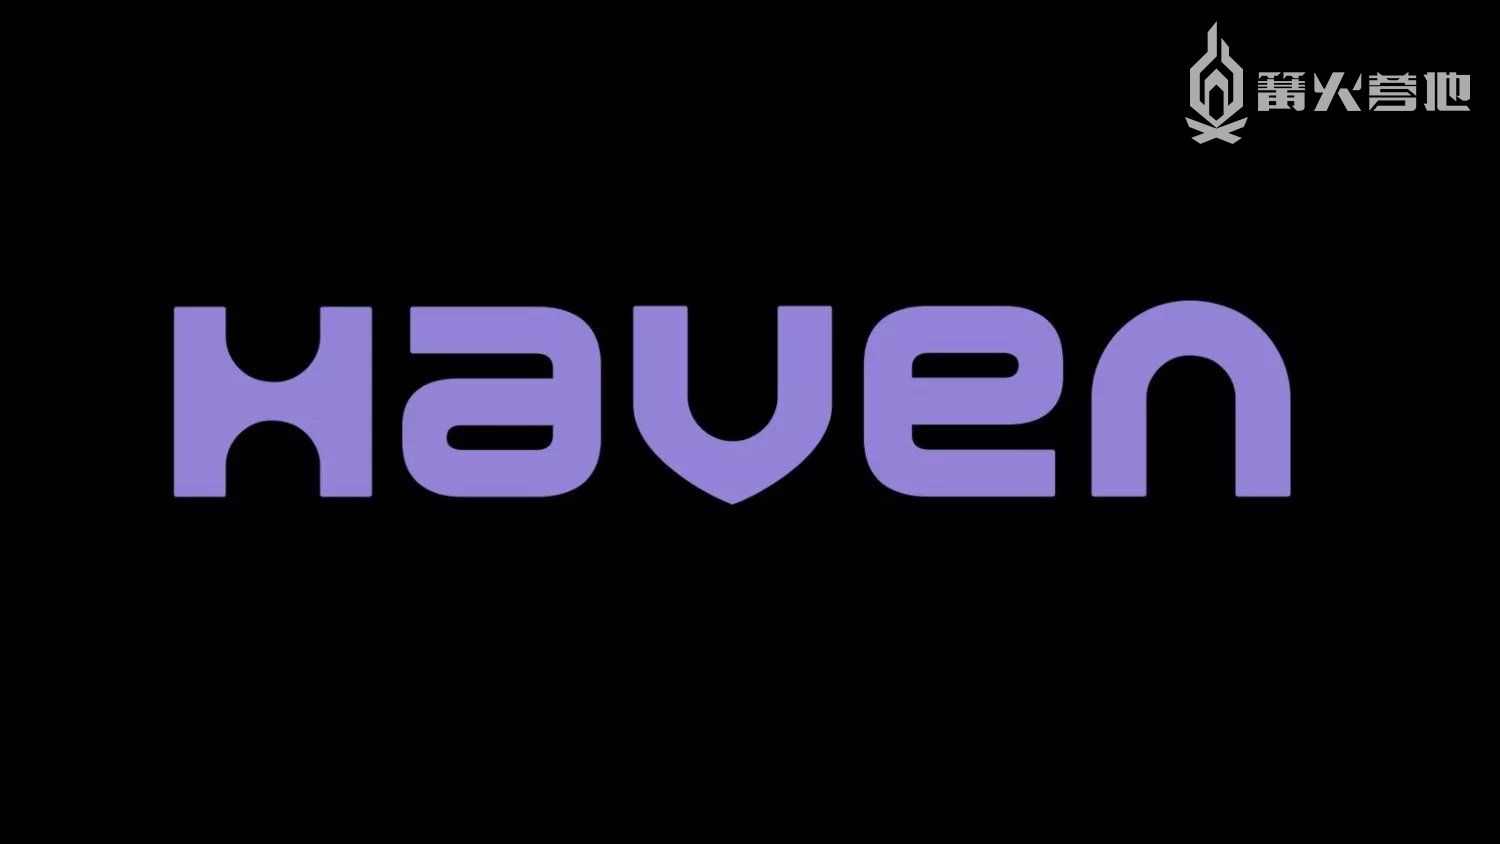 索尼全资收购 Haven Studios，打造全新多人游戏新 IP